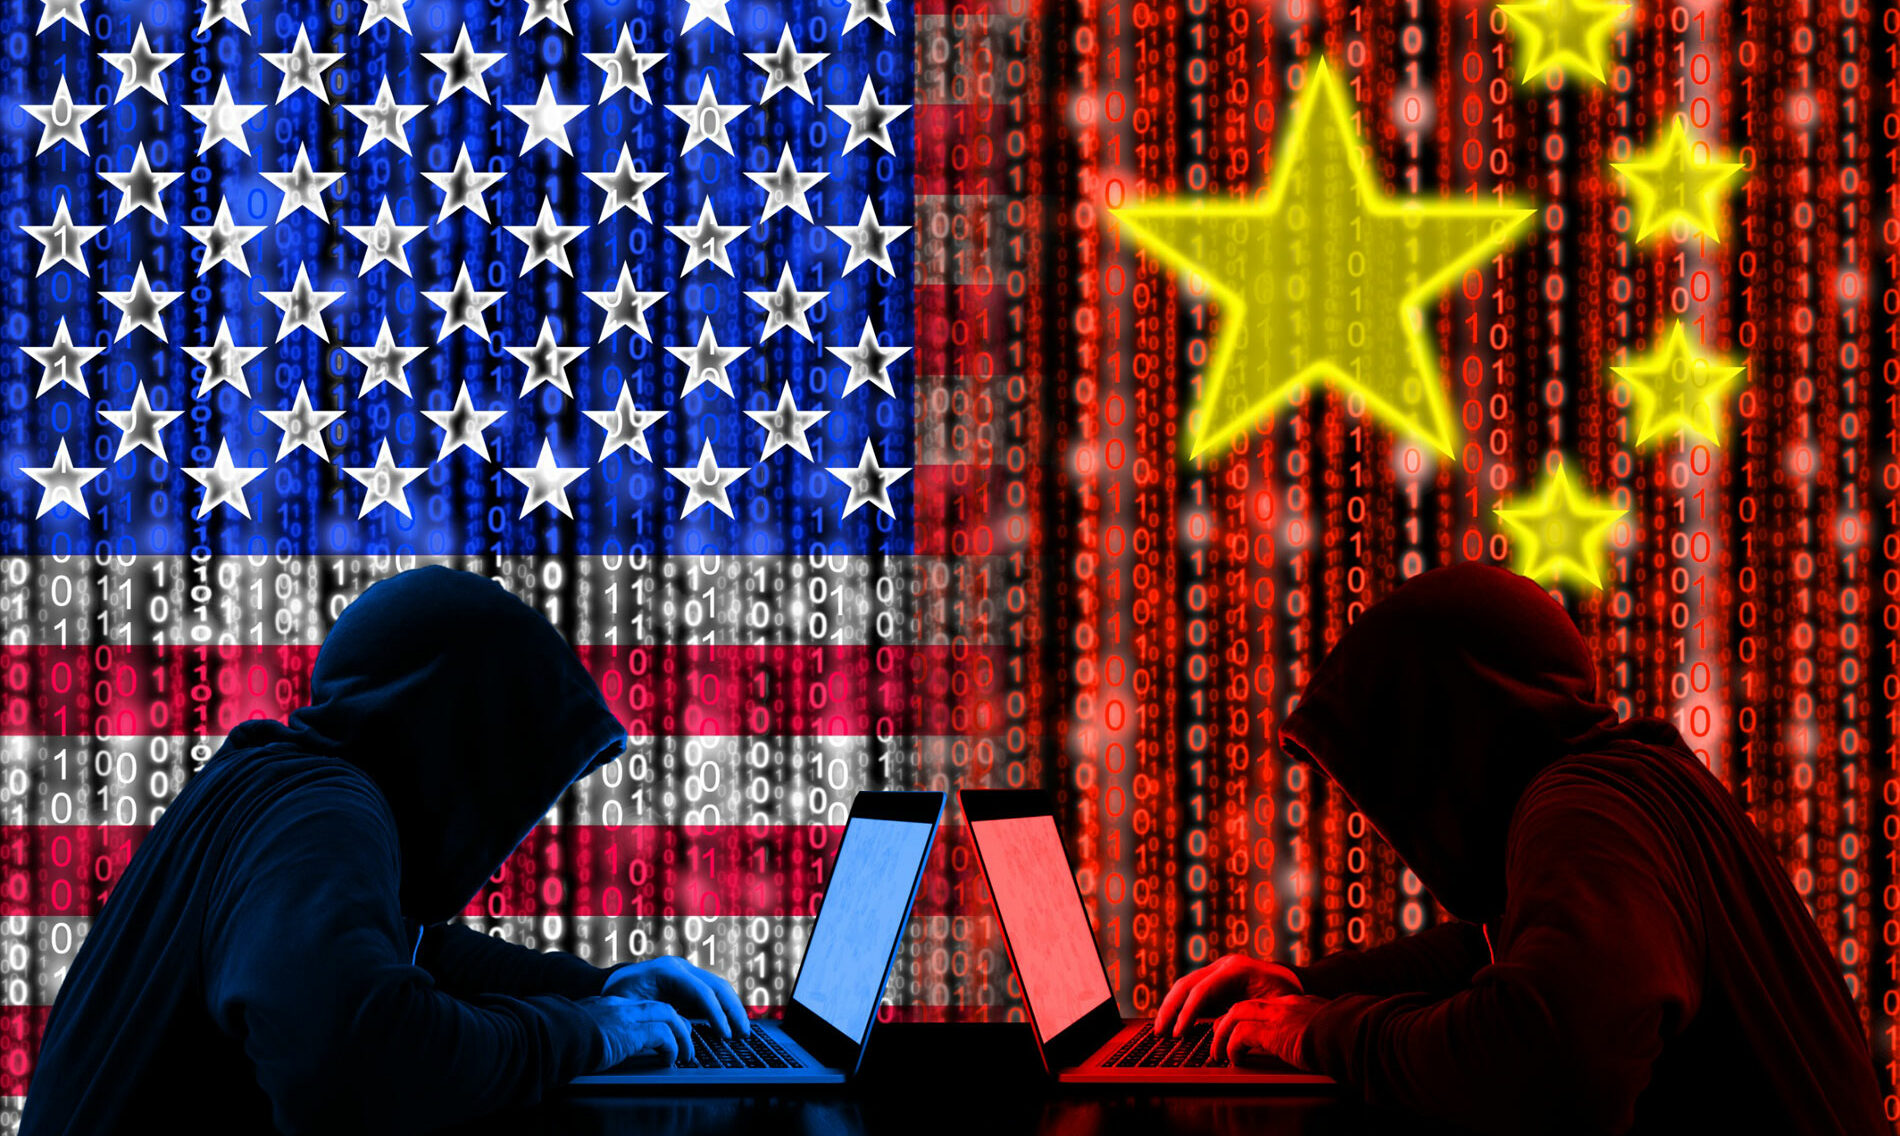 ο τεχνολογικός πόλεμος κίνας και ηπα εισέρχεται σε νέα φλογερή φάση